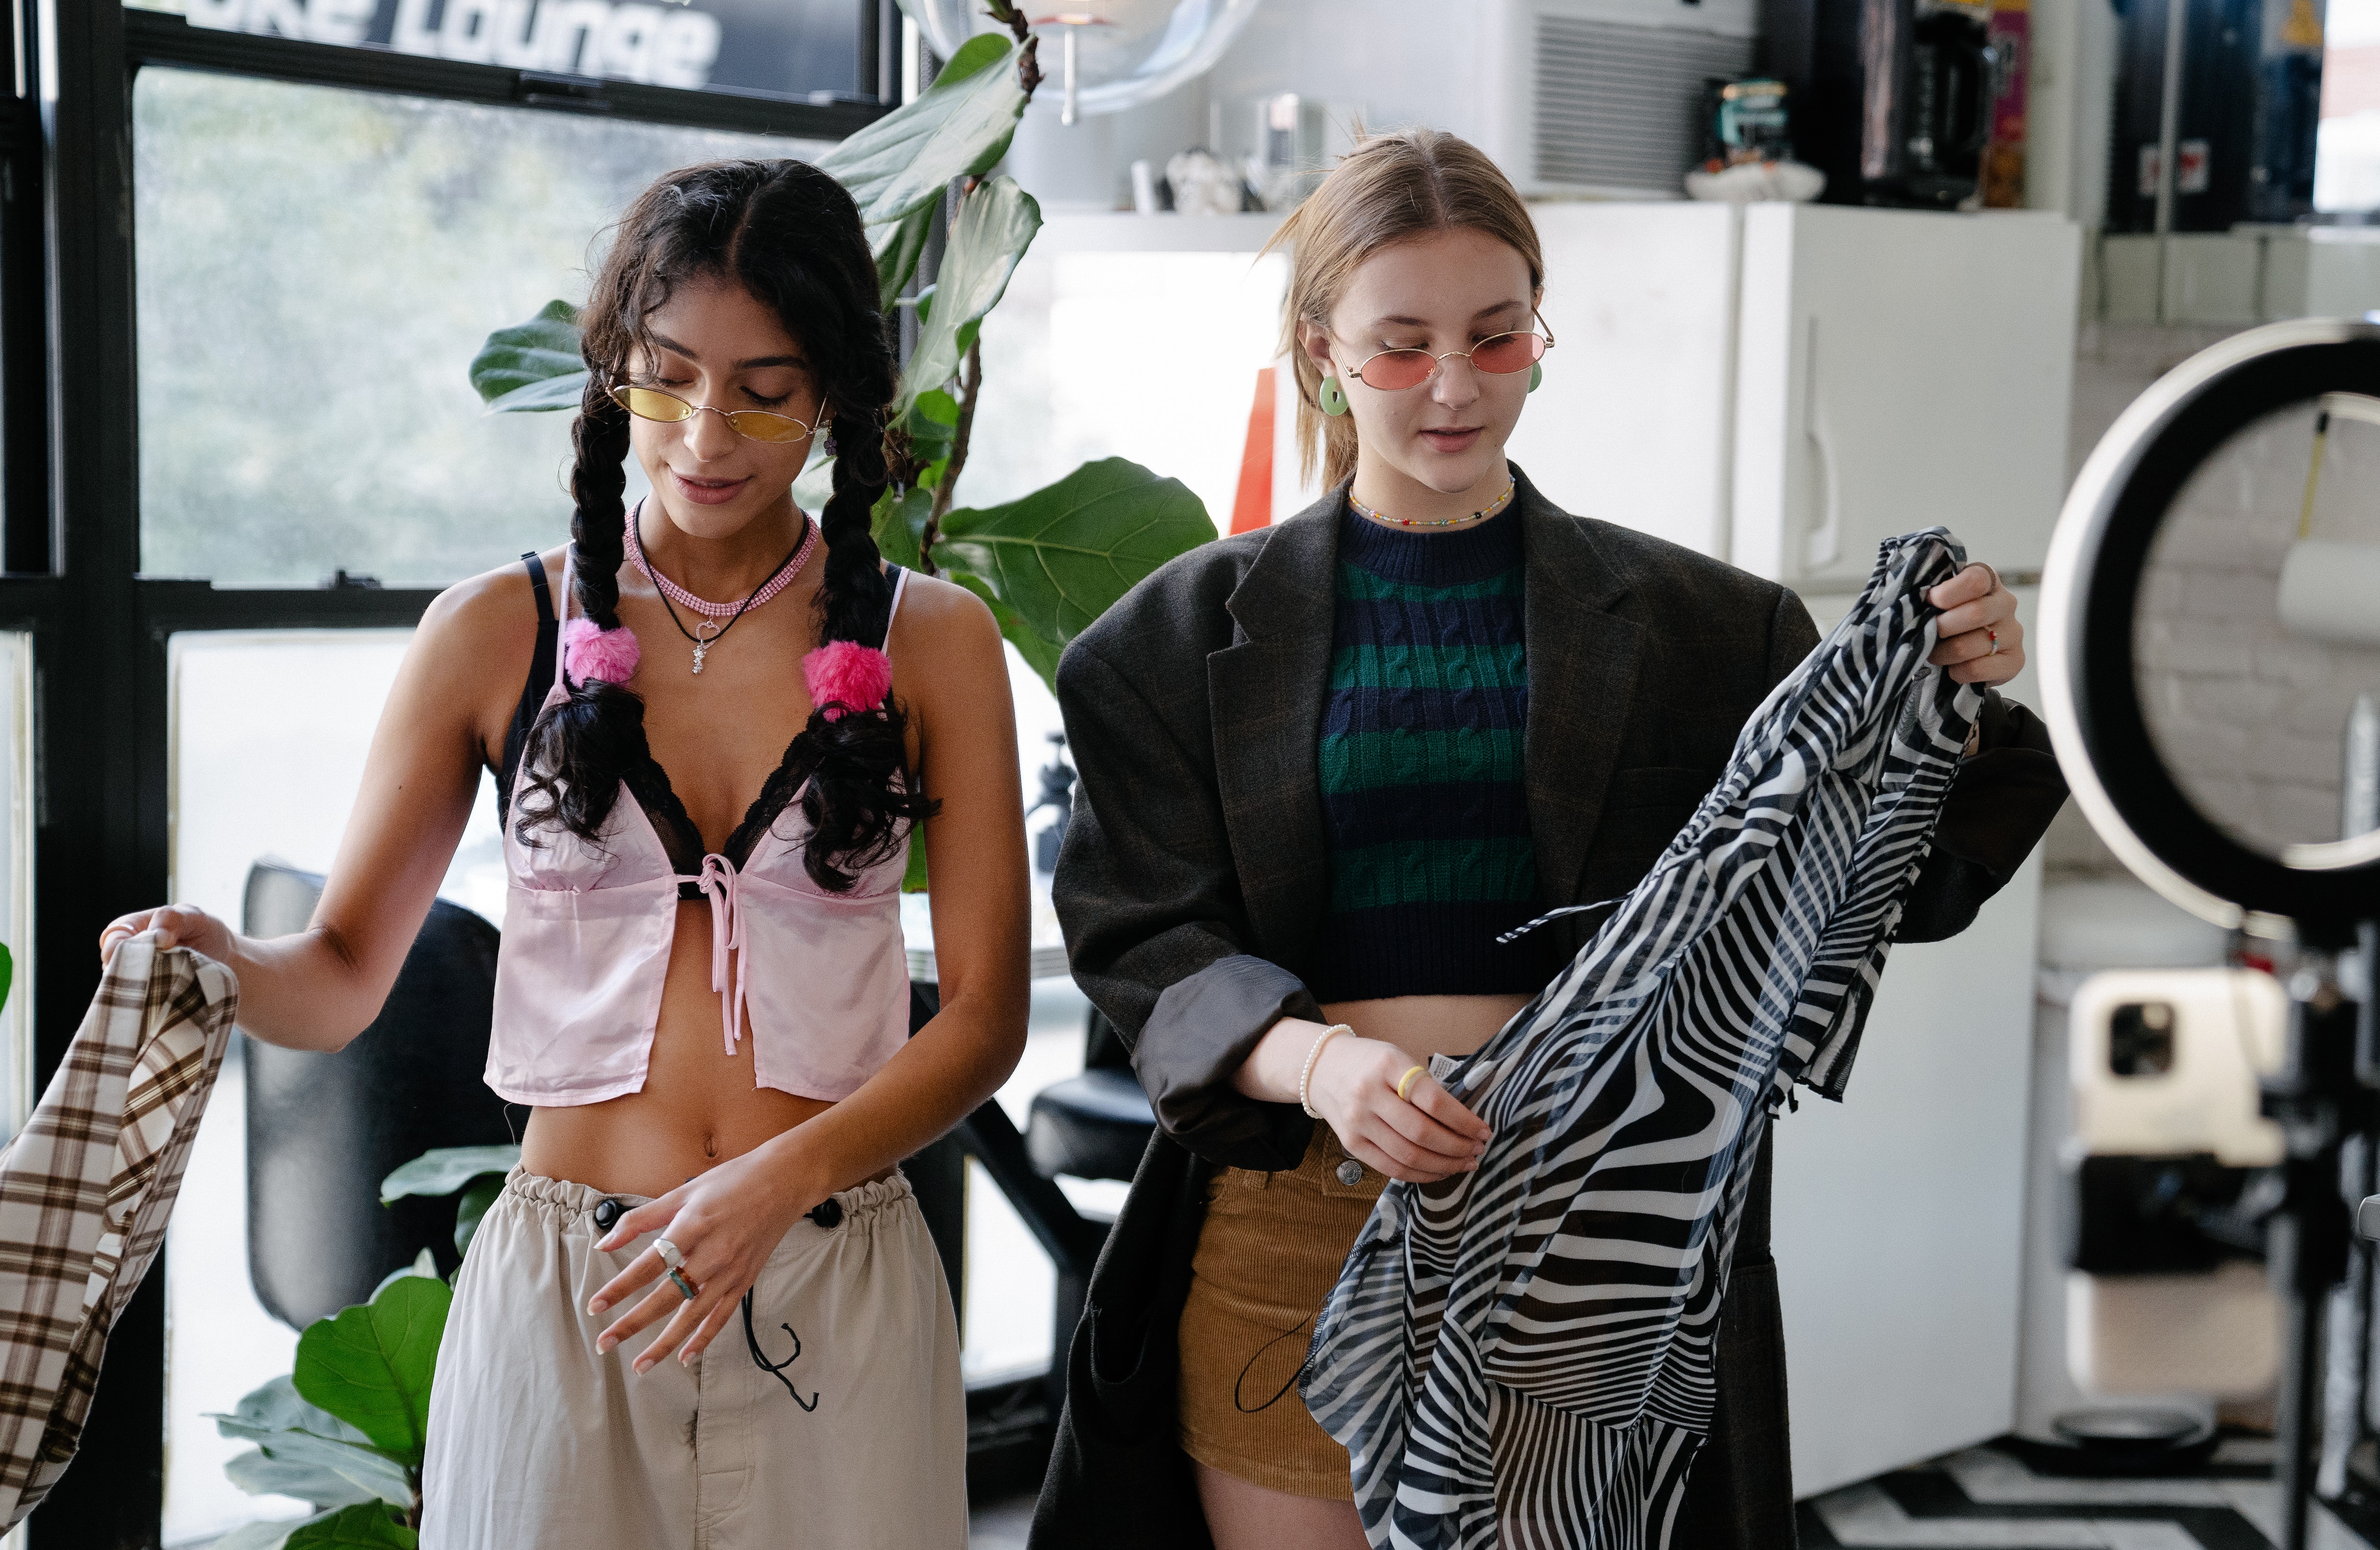 La imagen muestra dos chicas eligiendo ropa